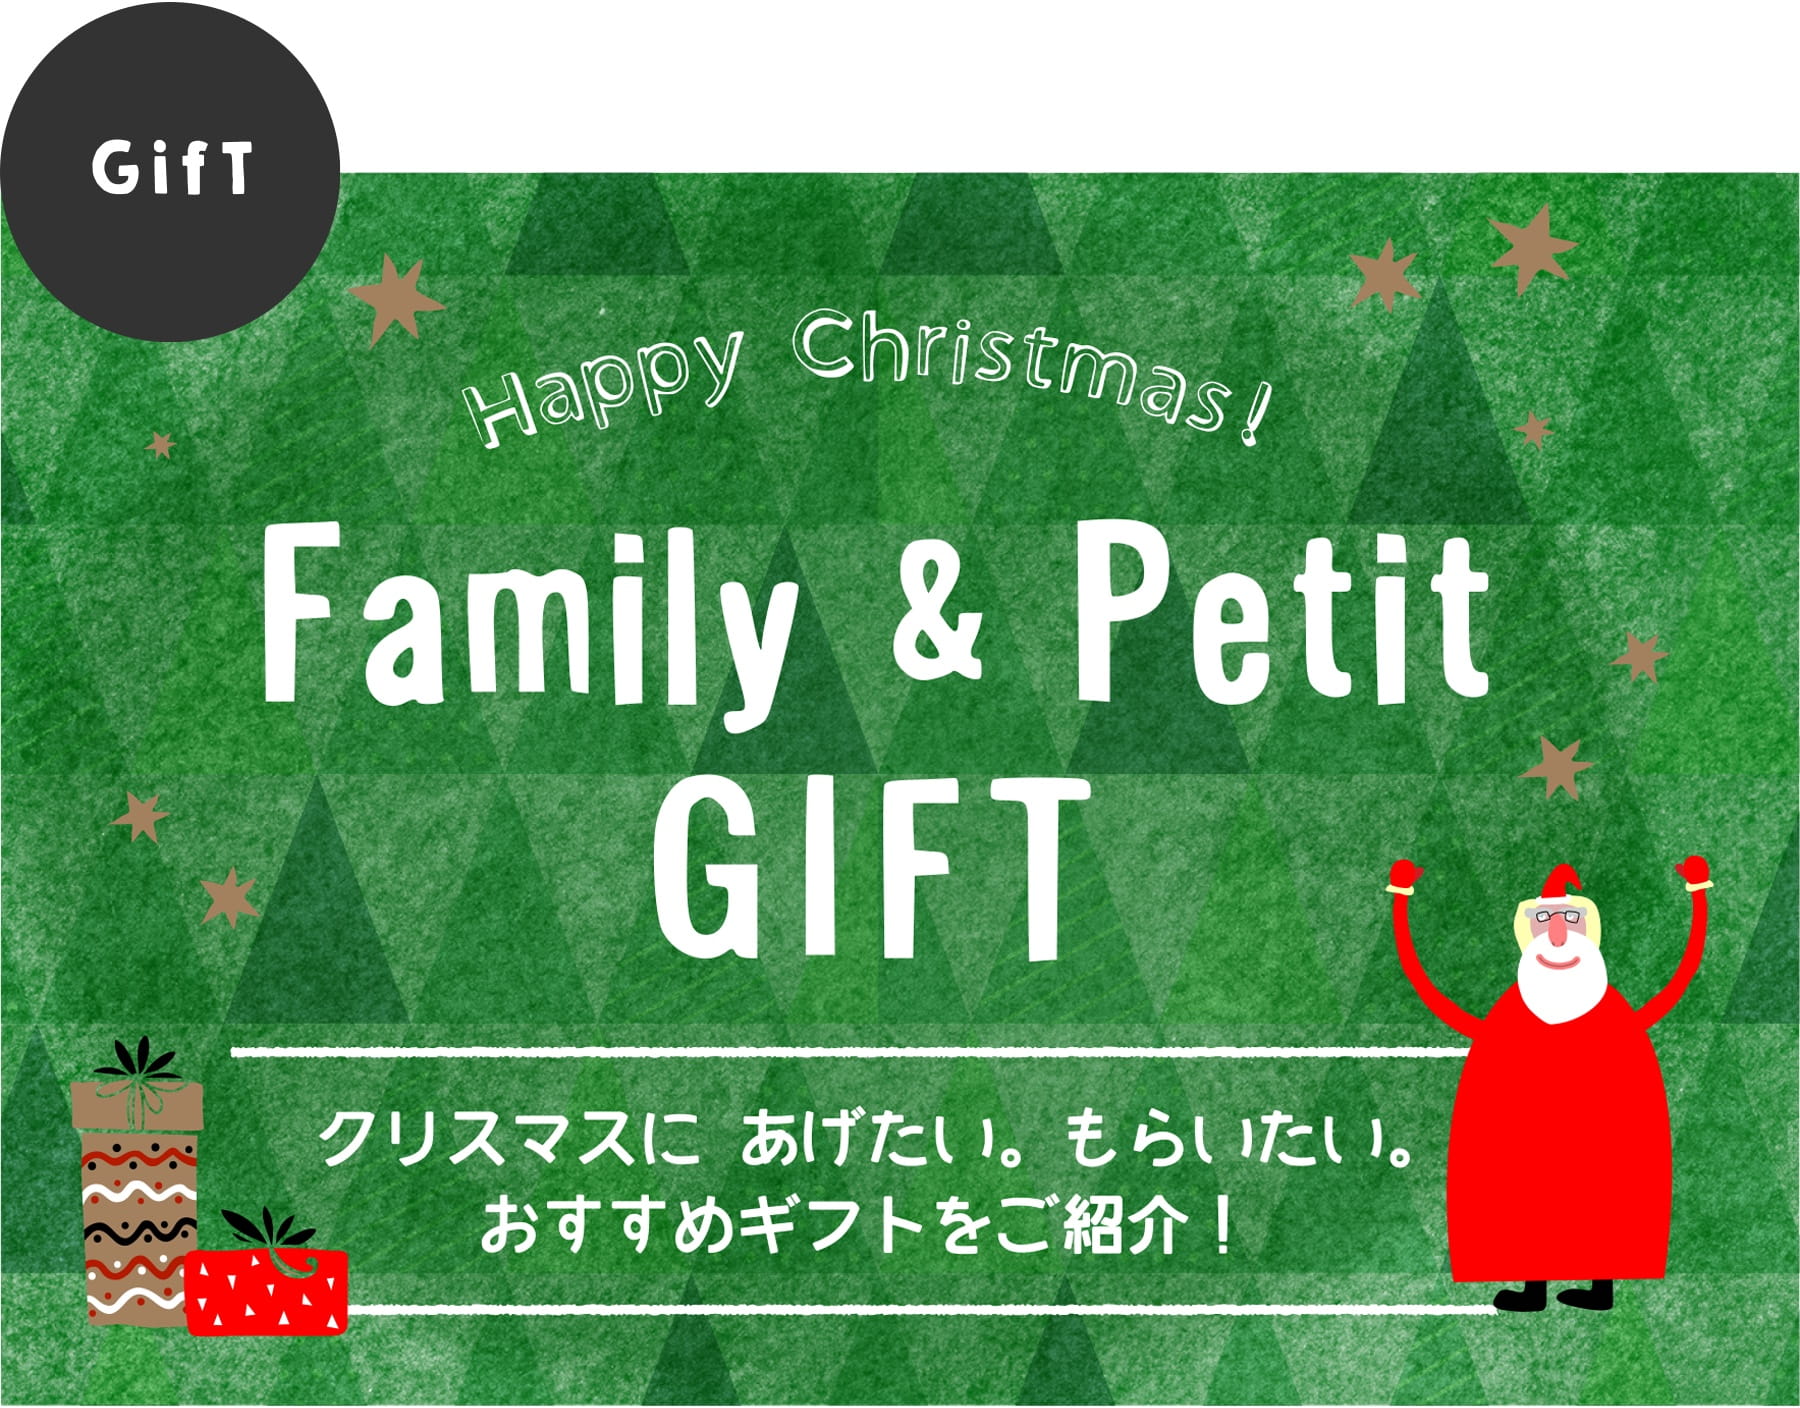 GifT：Happy Christmas!Family & Petit GIFT クリスマスに あげたい。もらいたい。おすすめギフトをご紹介！